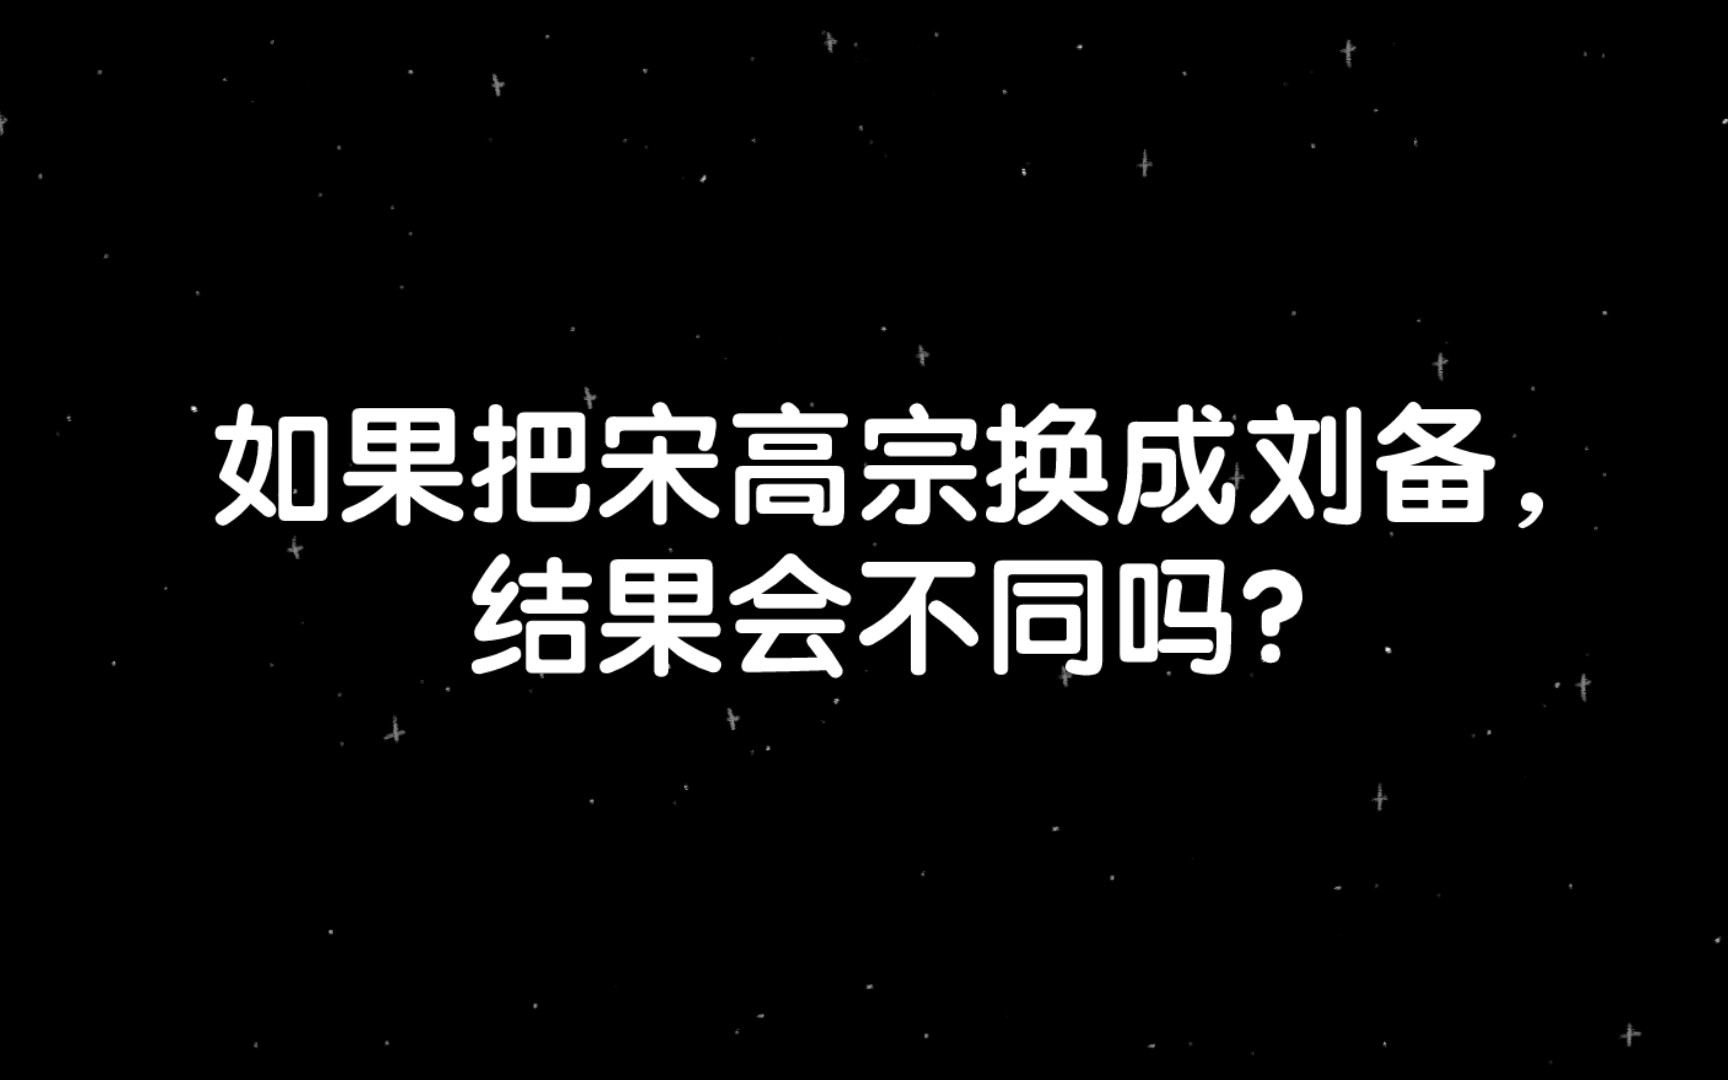 【知乎精选】如果把宋高宗换成刘备，结果会不同吗？